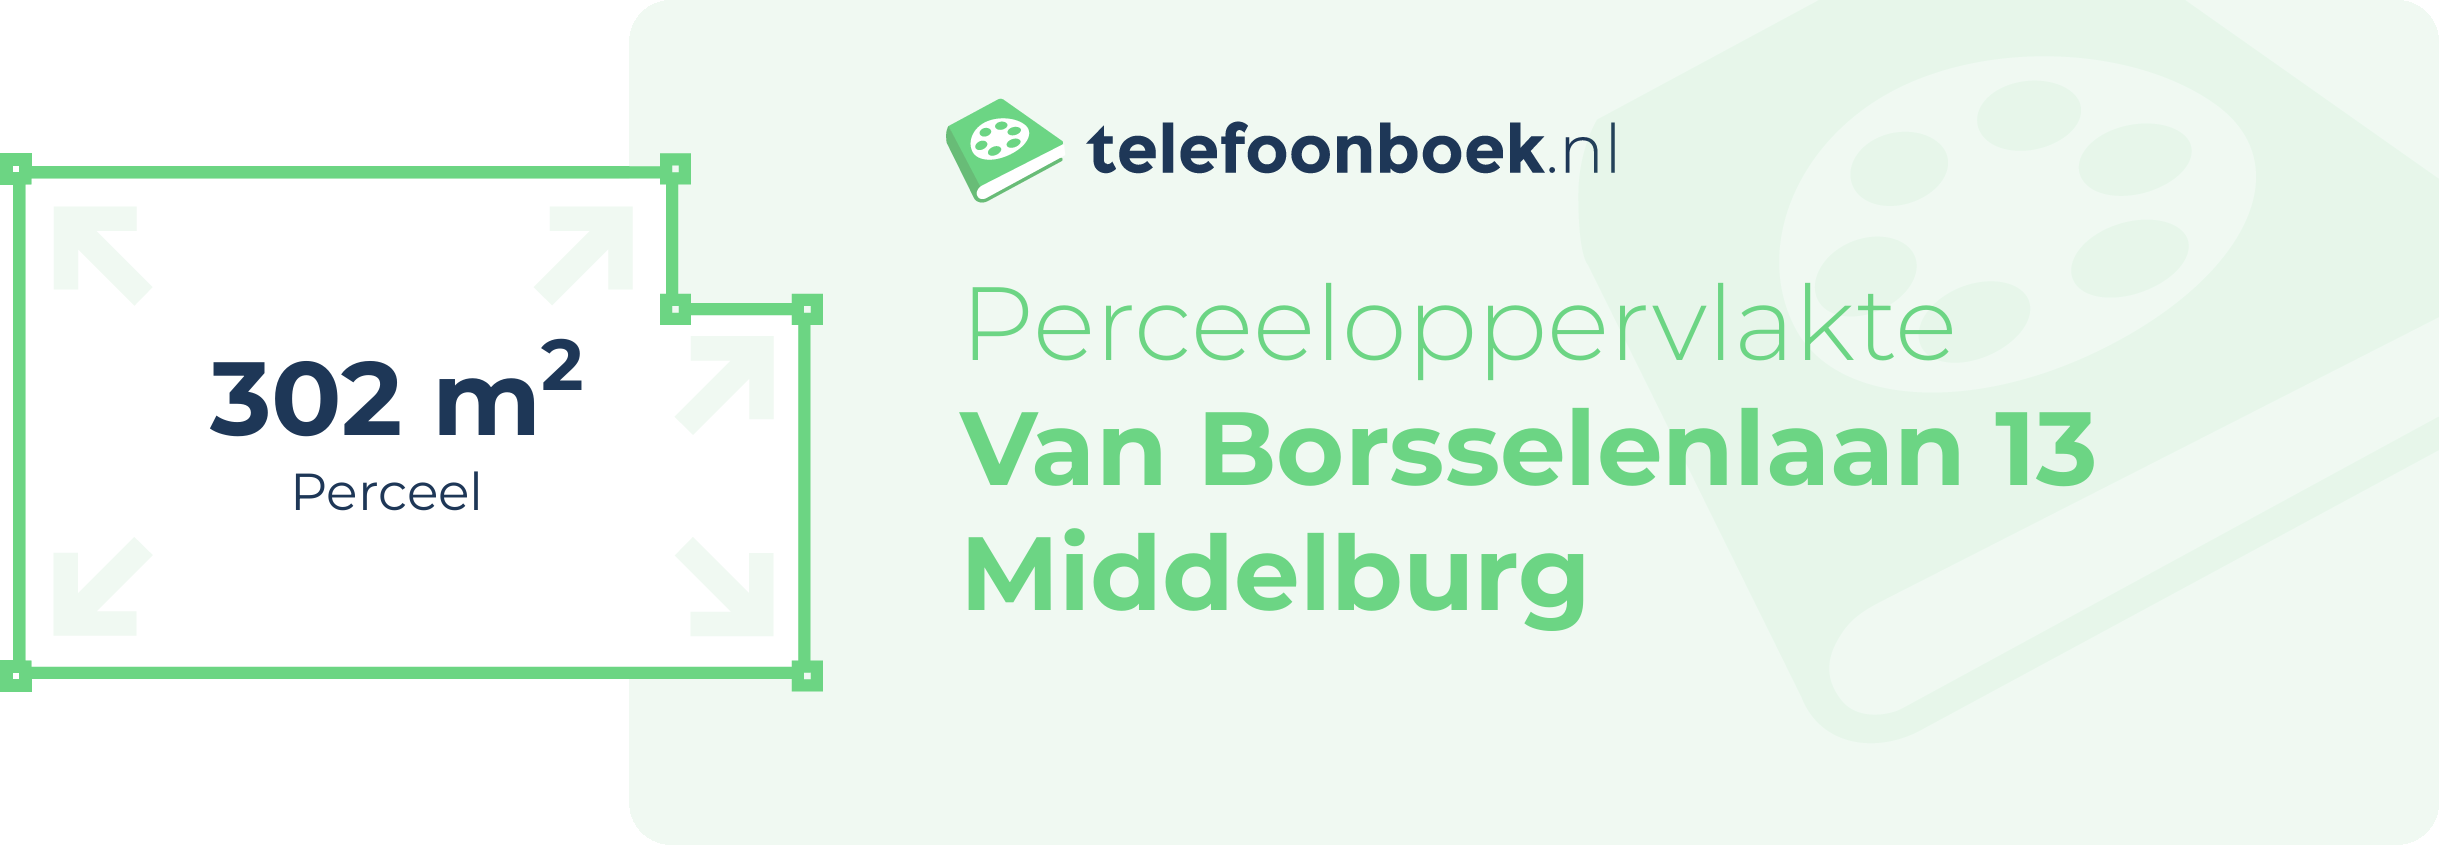 Perceeloppervlakte Van Borsselenlaan 13 Middelburg